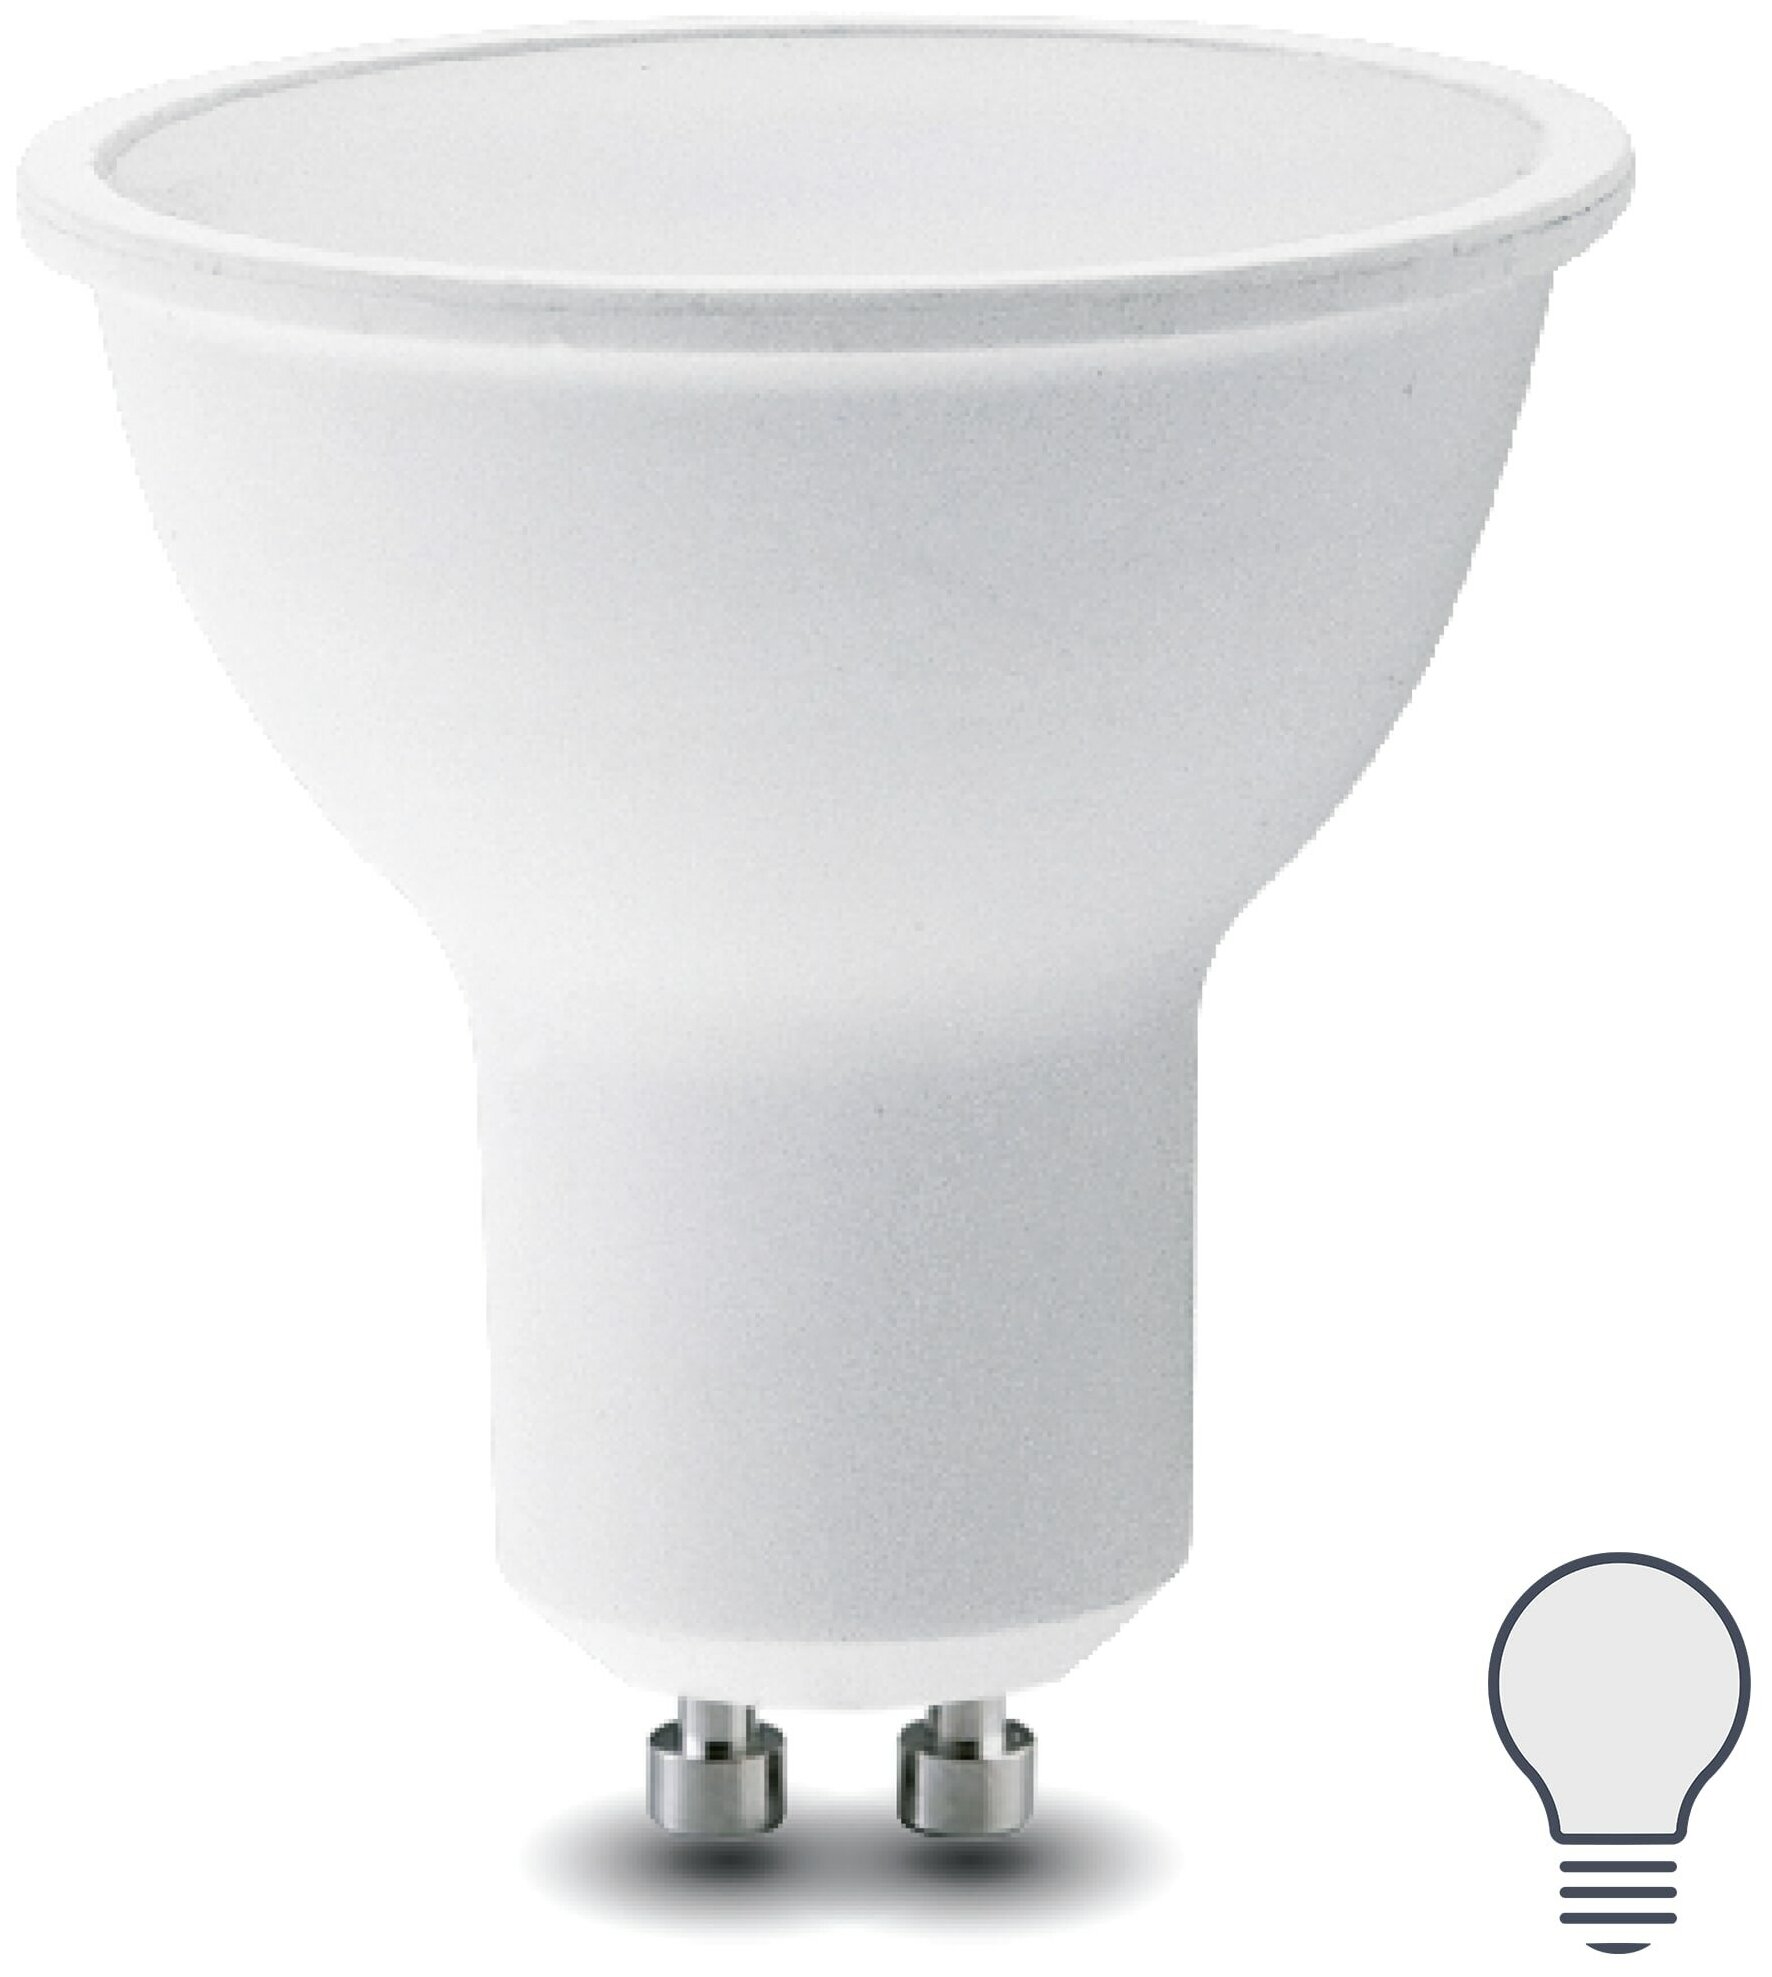 Лампа светодиодная Lexman GU10 175-250 В 8 Вт спот матовая 700 лм нейтральный белый свет. Набор из 2 шт.